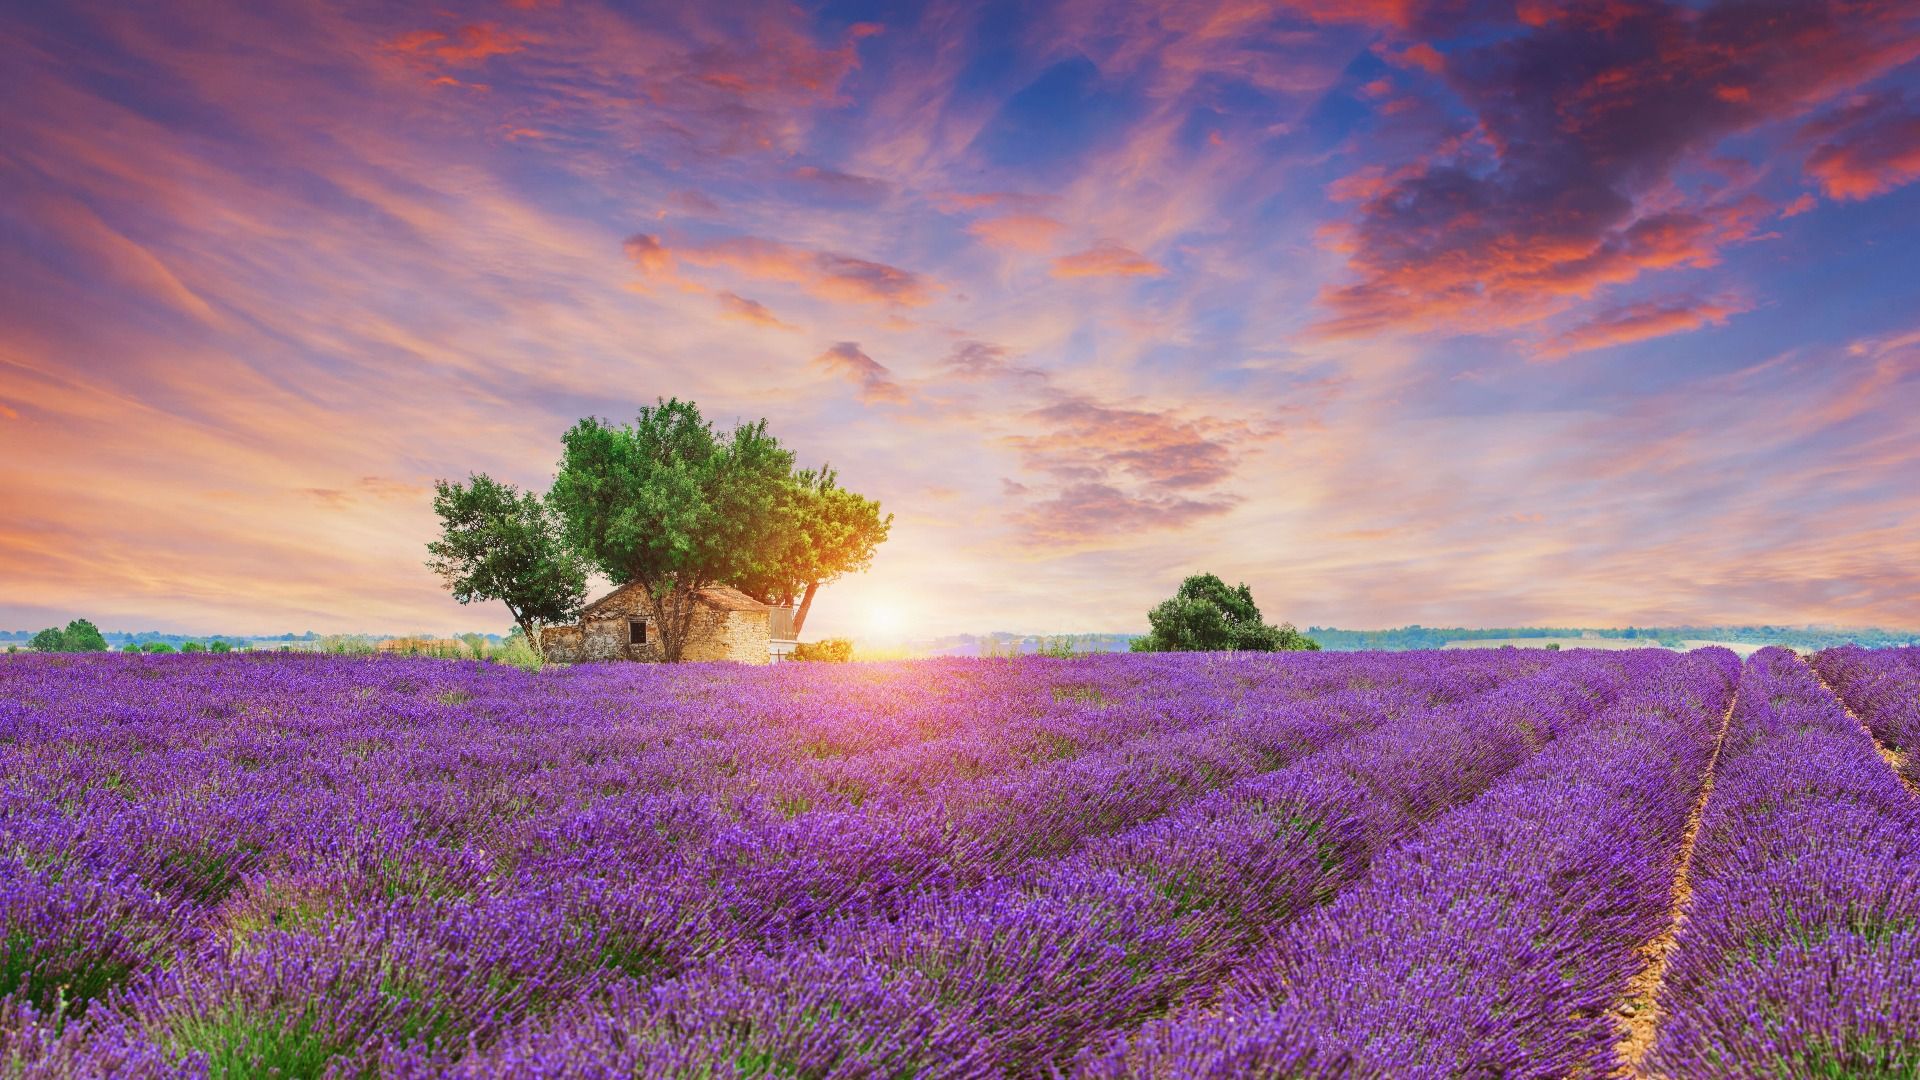 Fototapete - Lavendelfeld bei Sonnenaufgang - Fototapete